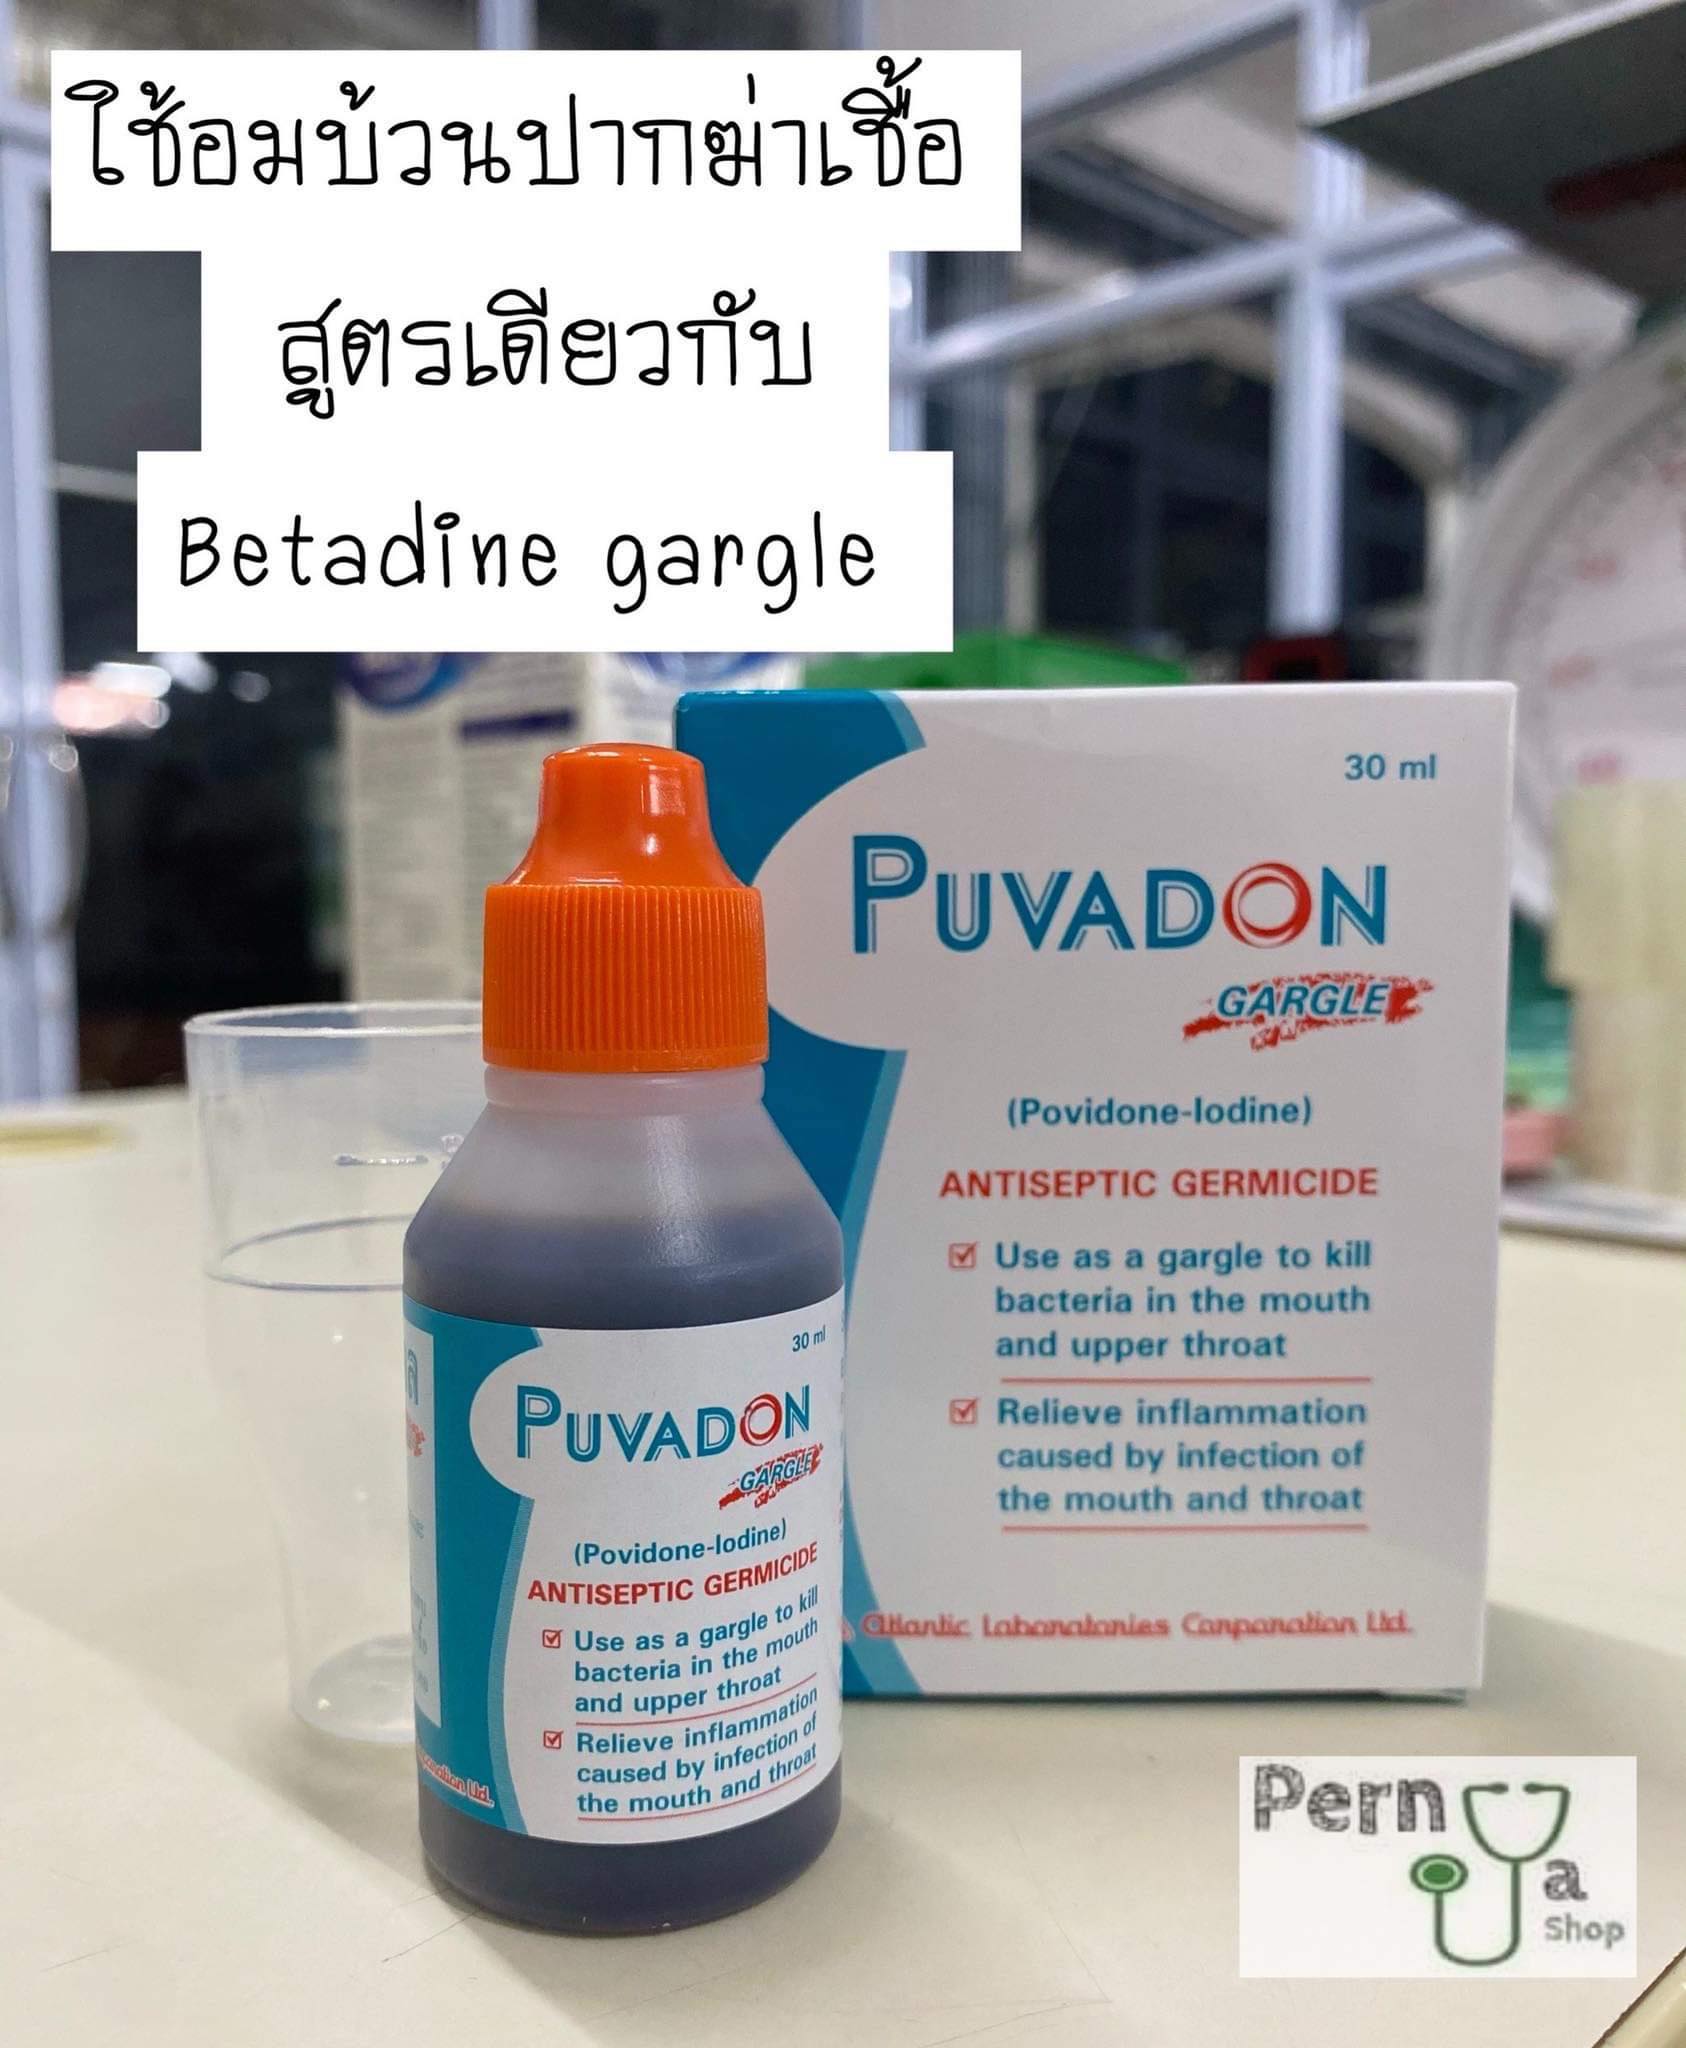 Puvadon Gargle (สูตรเดียวกับ Betadine gargle) อมบ้วนปาก น้ำยาบ้วนปาก กลั้วปาก ป้องกันการติดเชื้อของแผลในช่องปากและลำคอ 30 ml